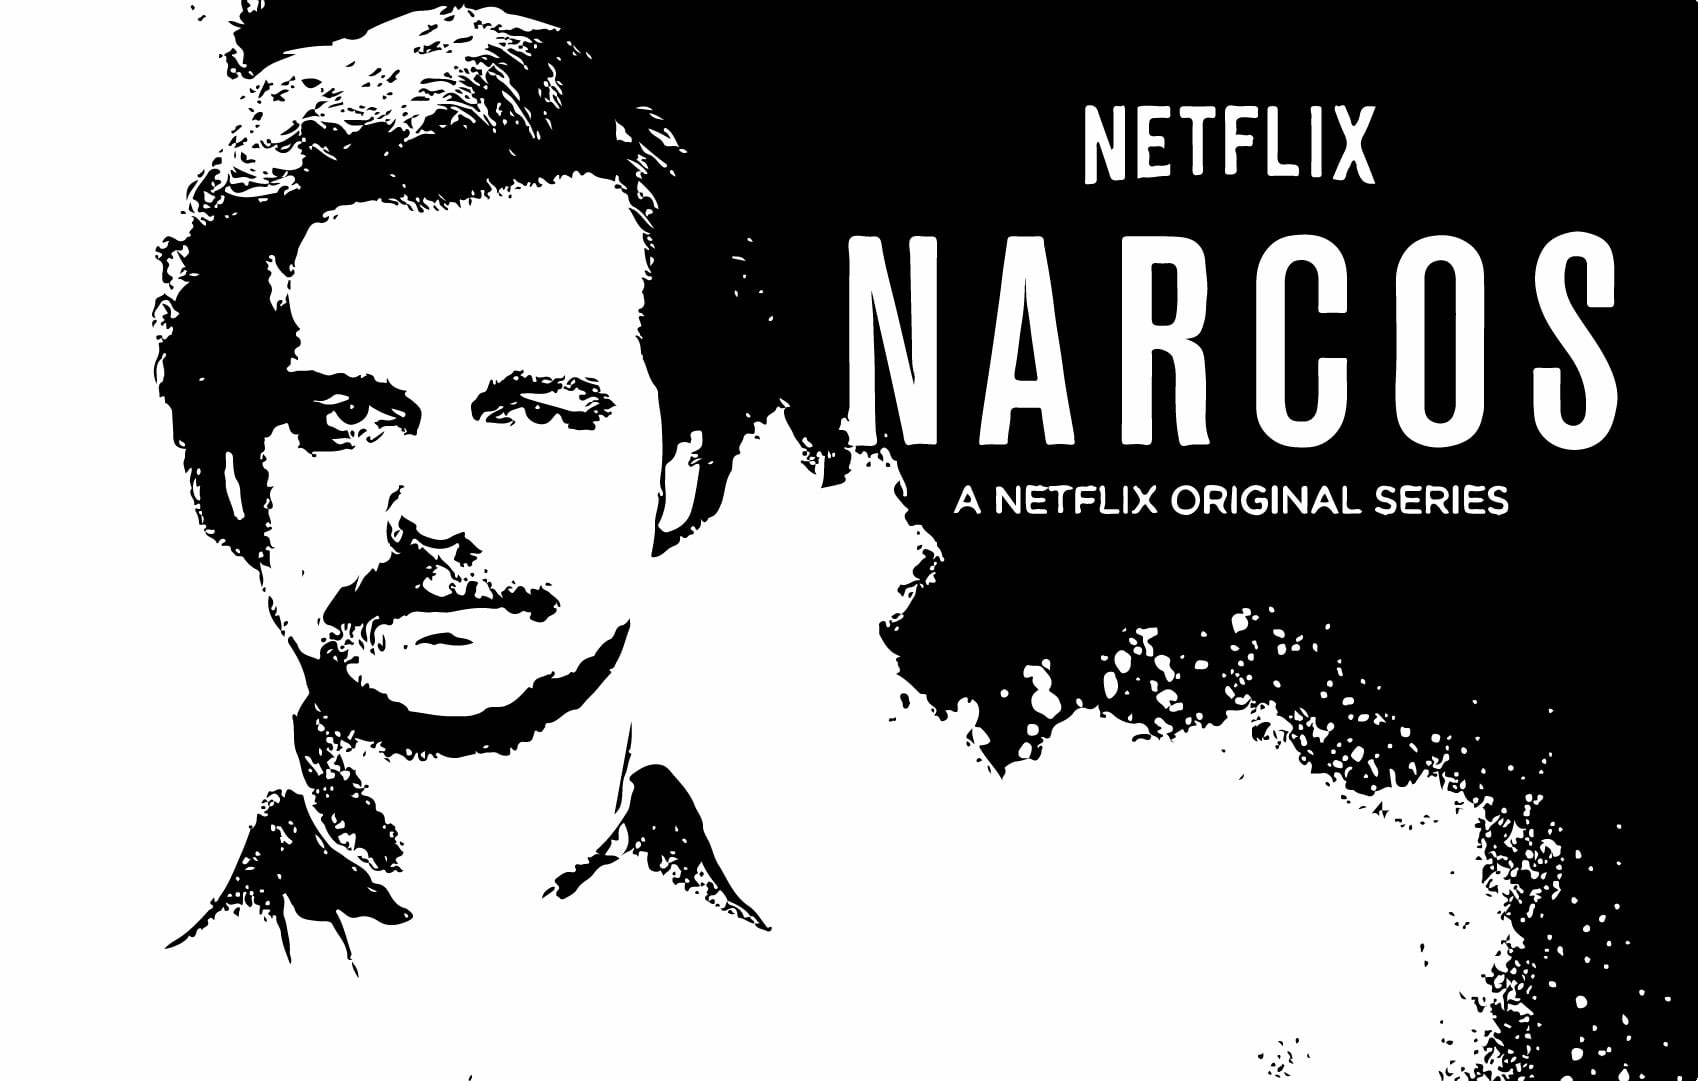 Netflix Narcos , HD Wallpaper & Backgrounds